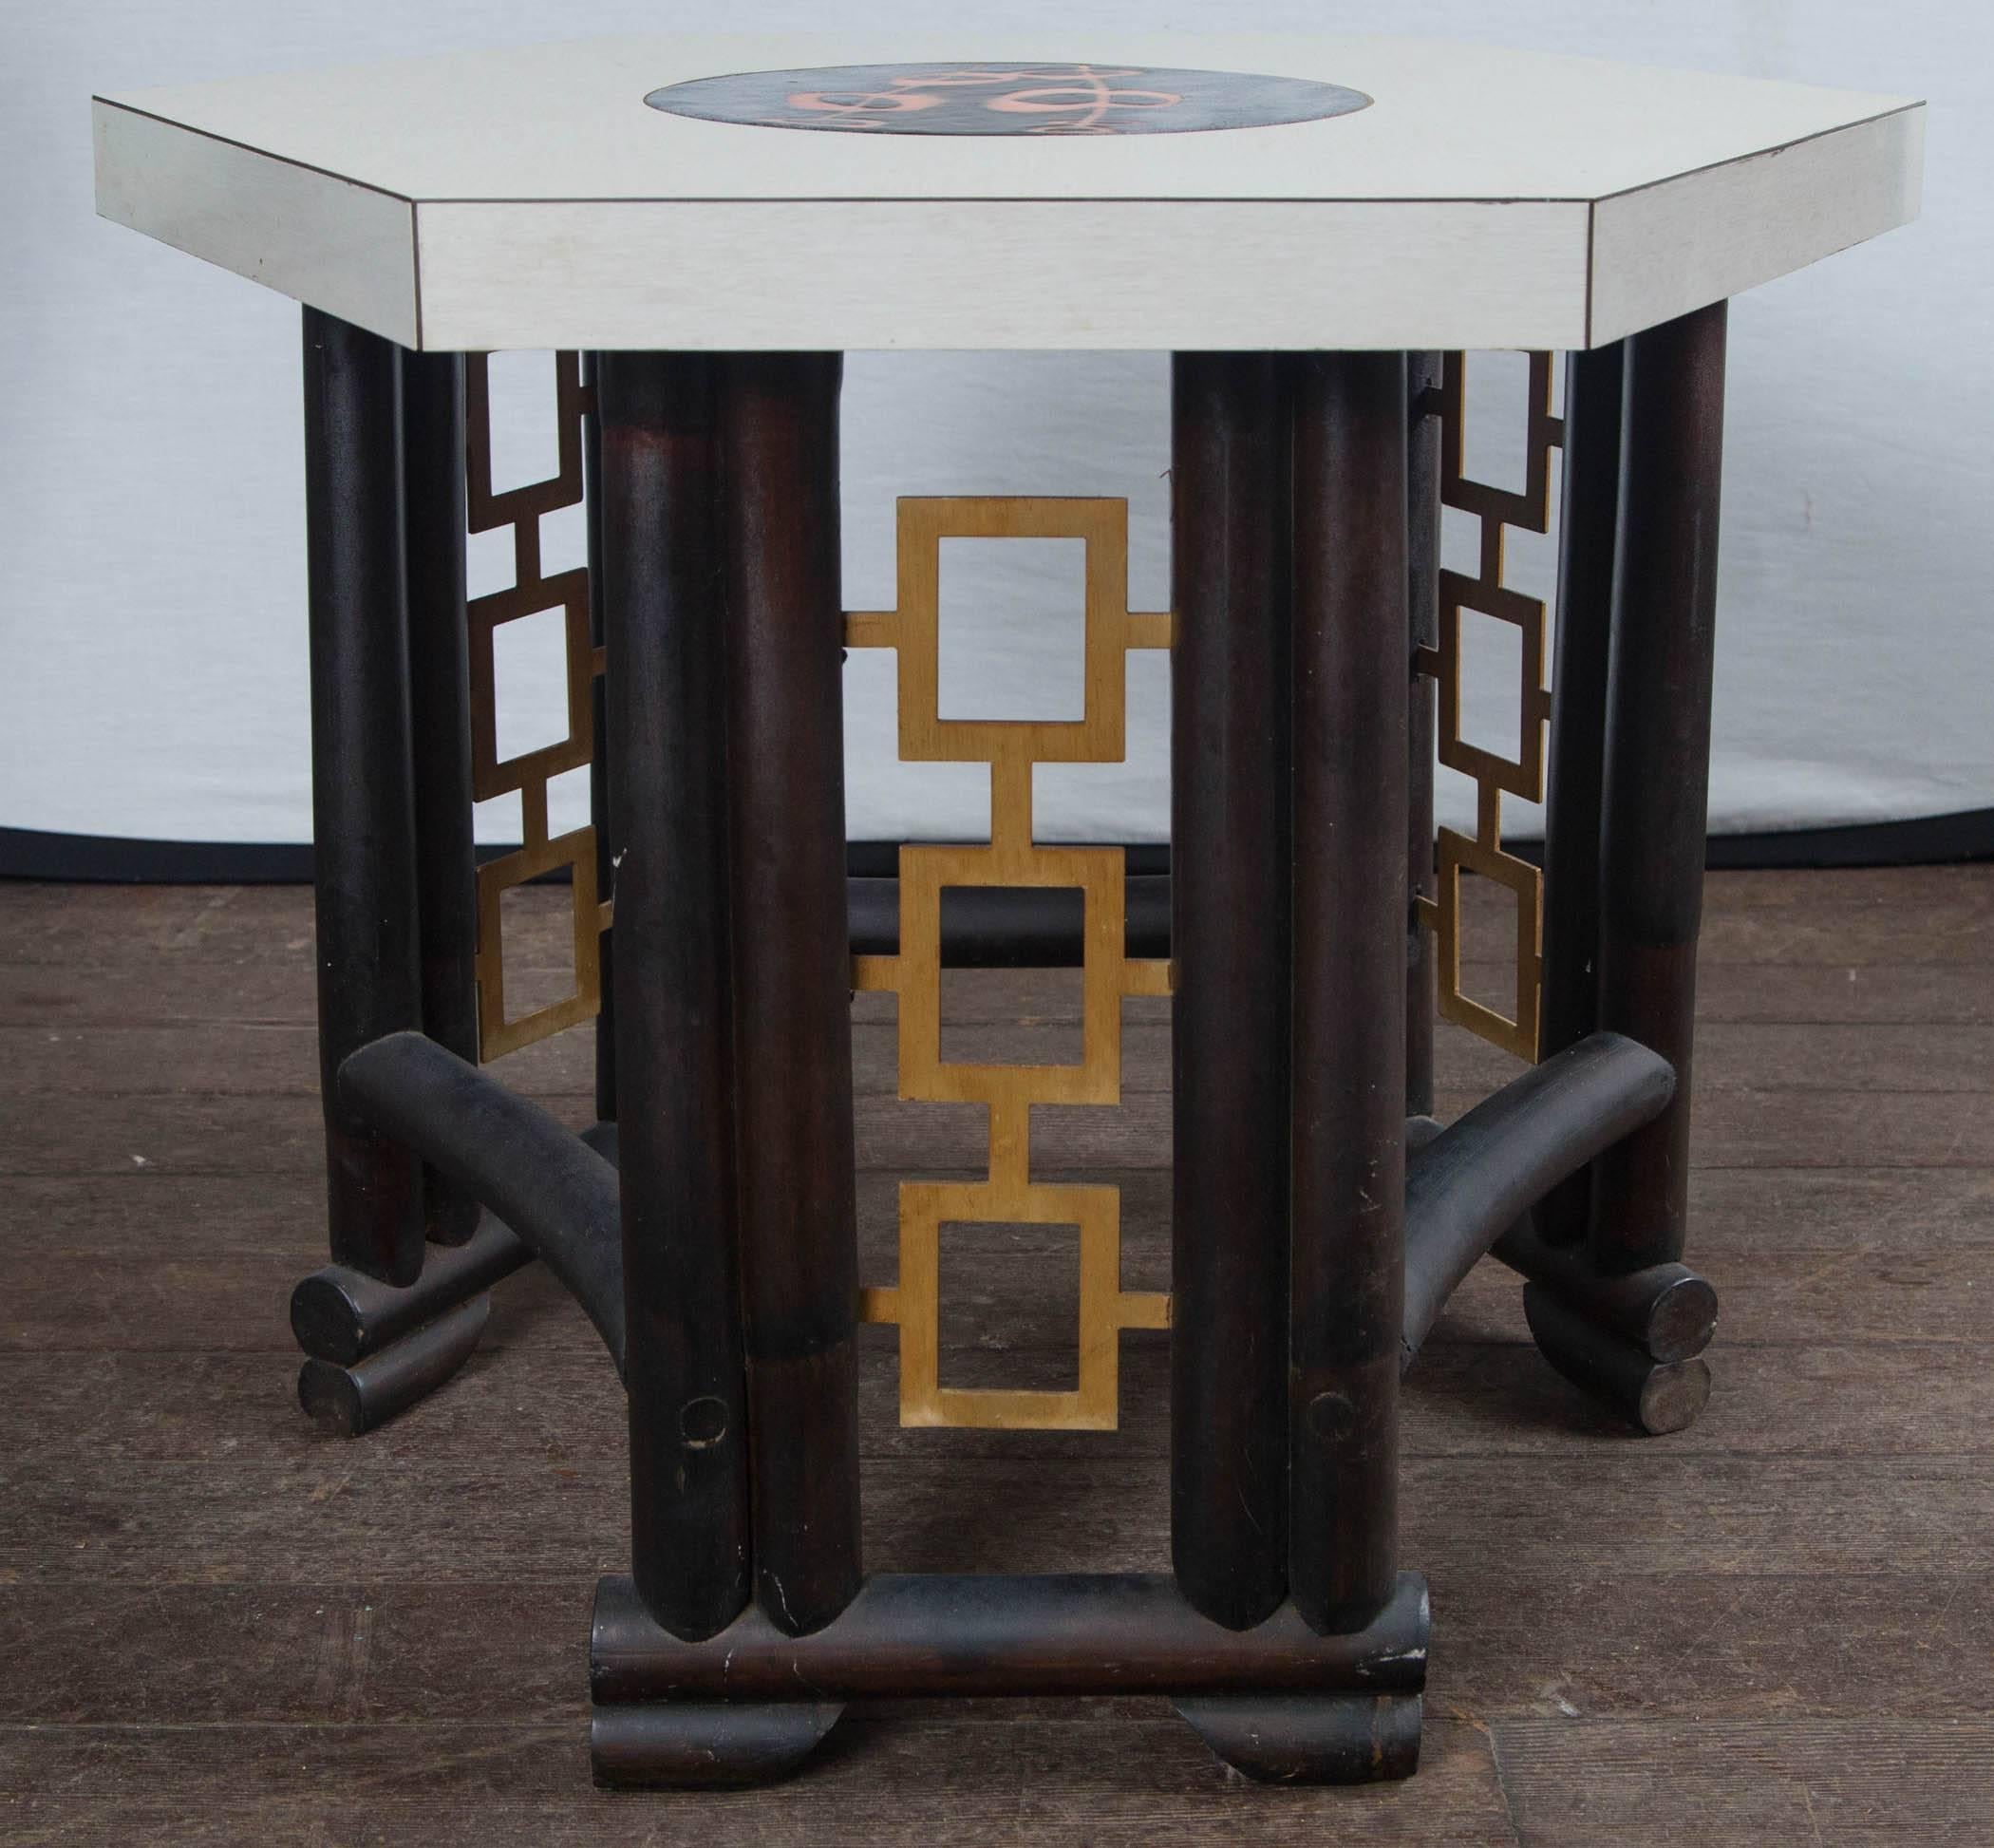 Maßgefertigter asiatischer Holztisch im Bambus-Stil, Laminatplatte mit emaillierter Einlegearbeit in der Mitte. Geometrisches Design aus vergoldetem Metall auf dem Sockel. Sehr schick!